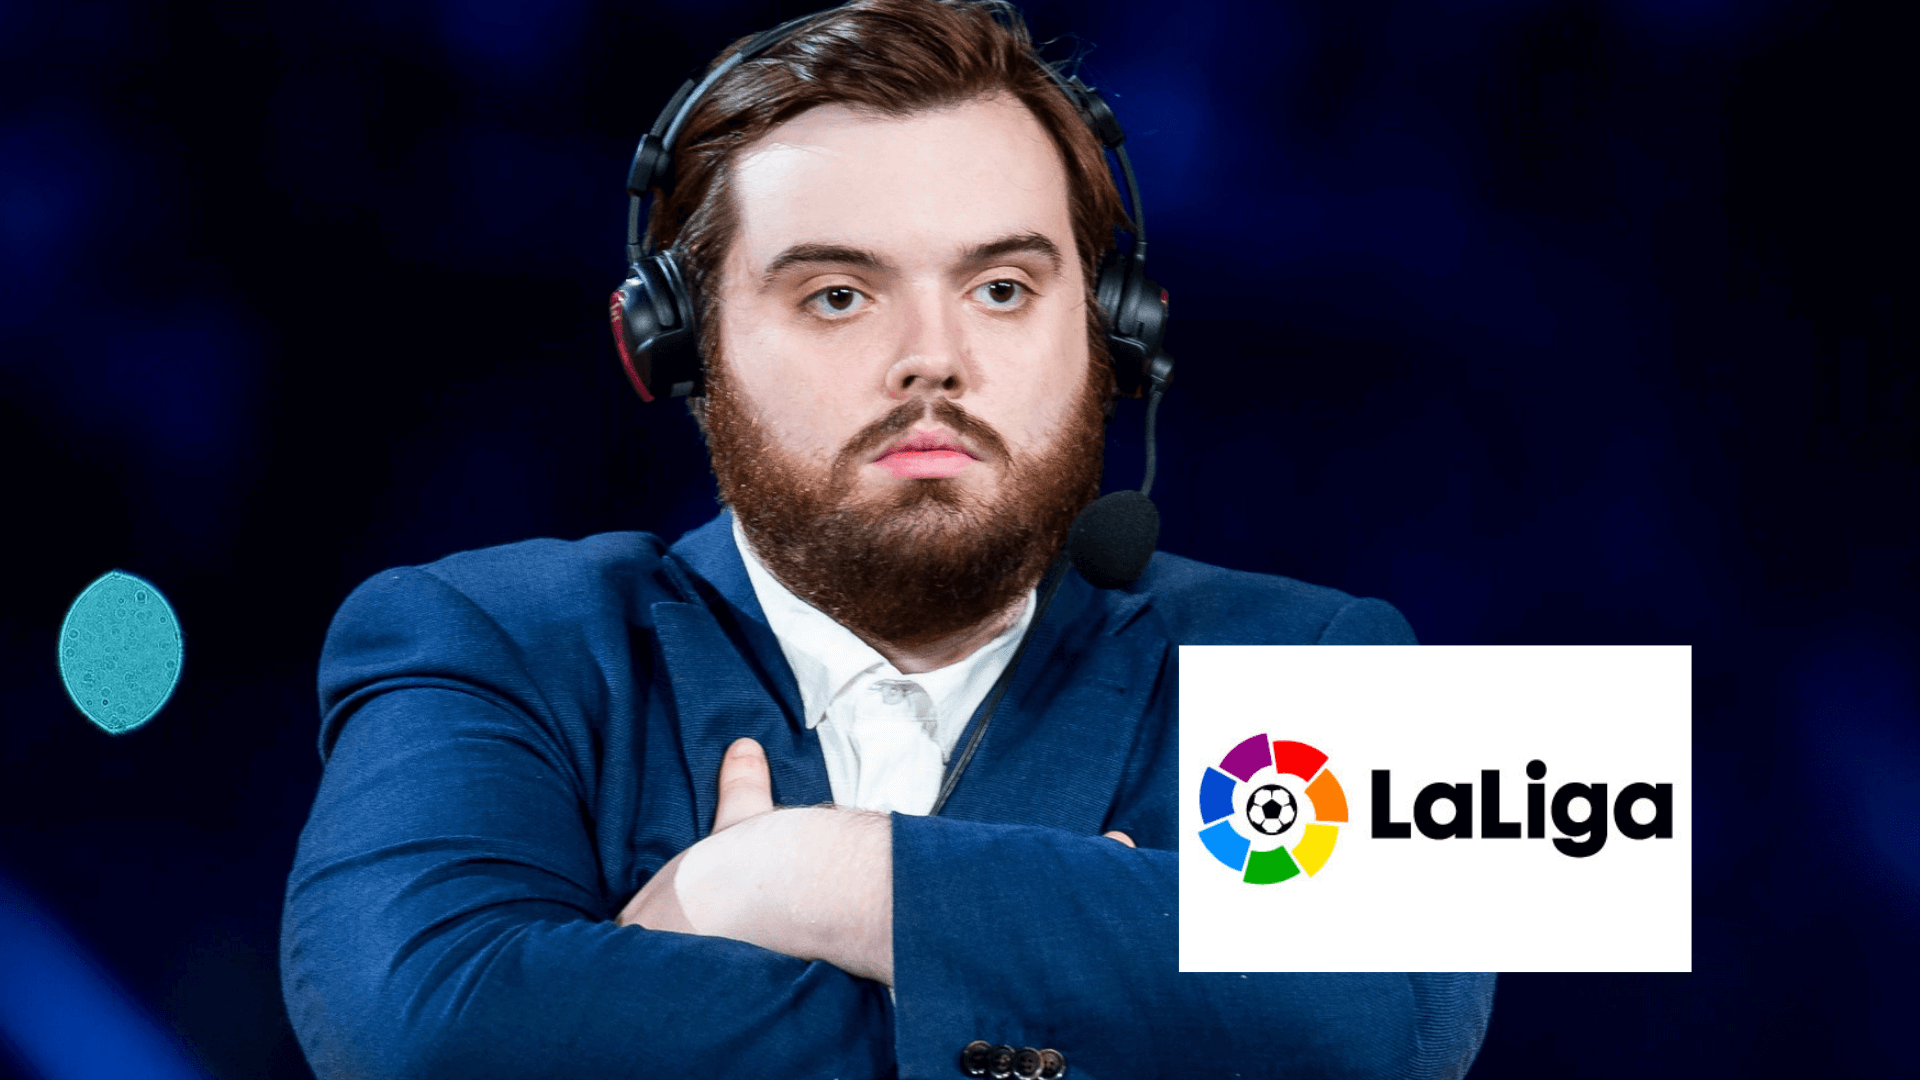 Ibai Llanos y otros streamers narrarán partidos de fútbol español en televisión